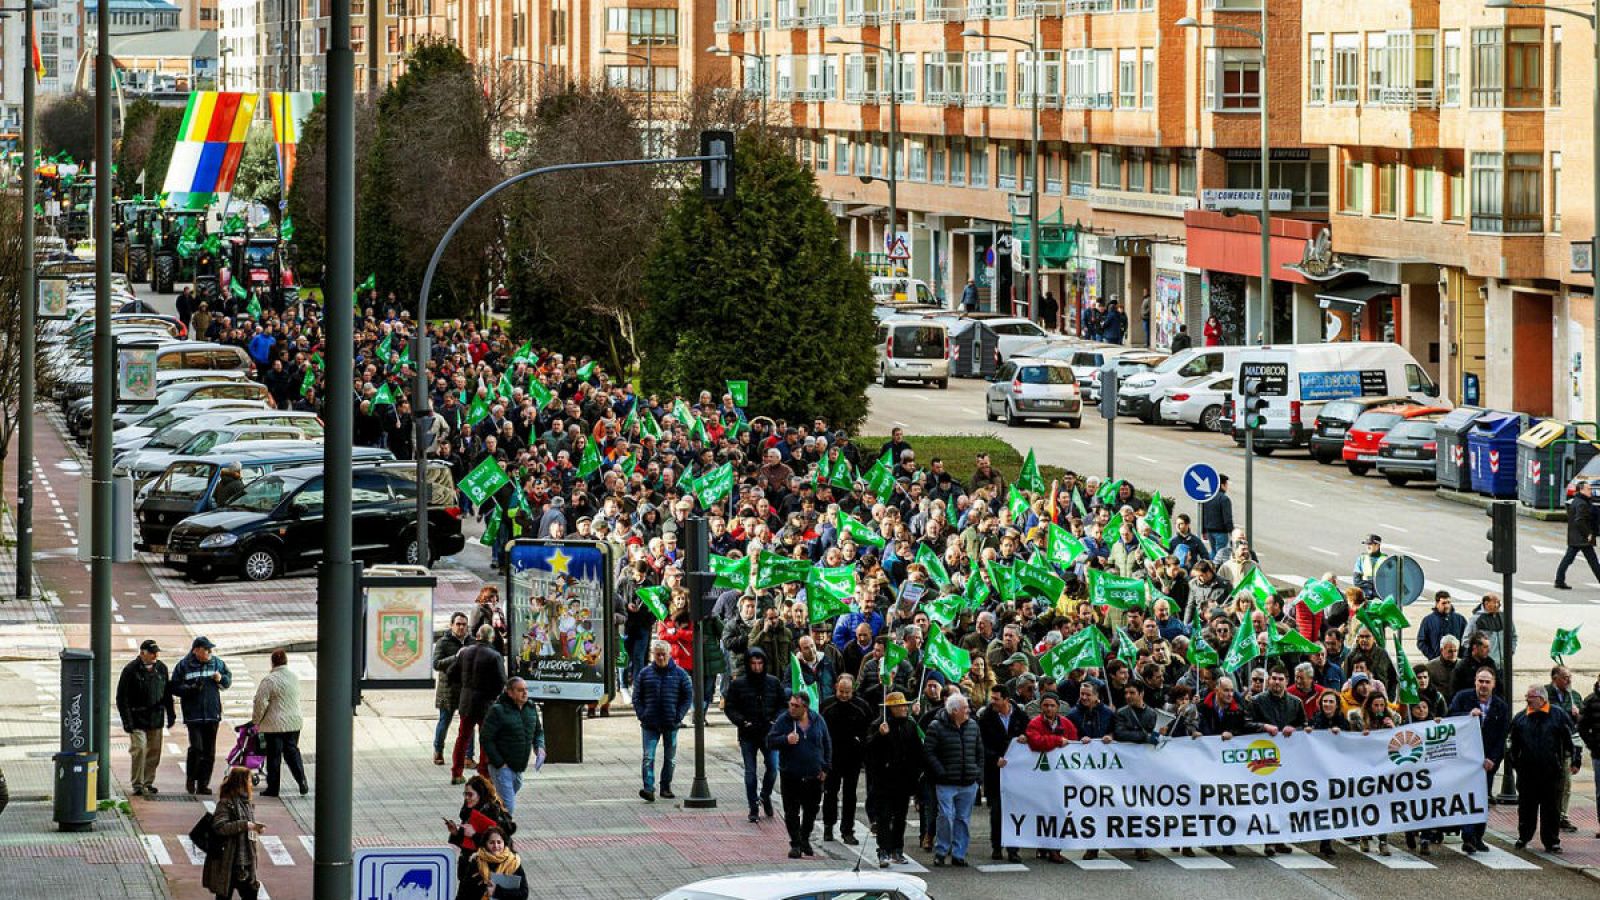 Agricultores y ganaderos participan en una manifestación bajo el lema "En defensa de su futuro" en Burgos.